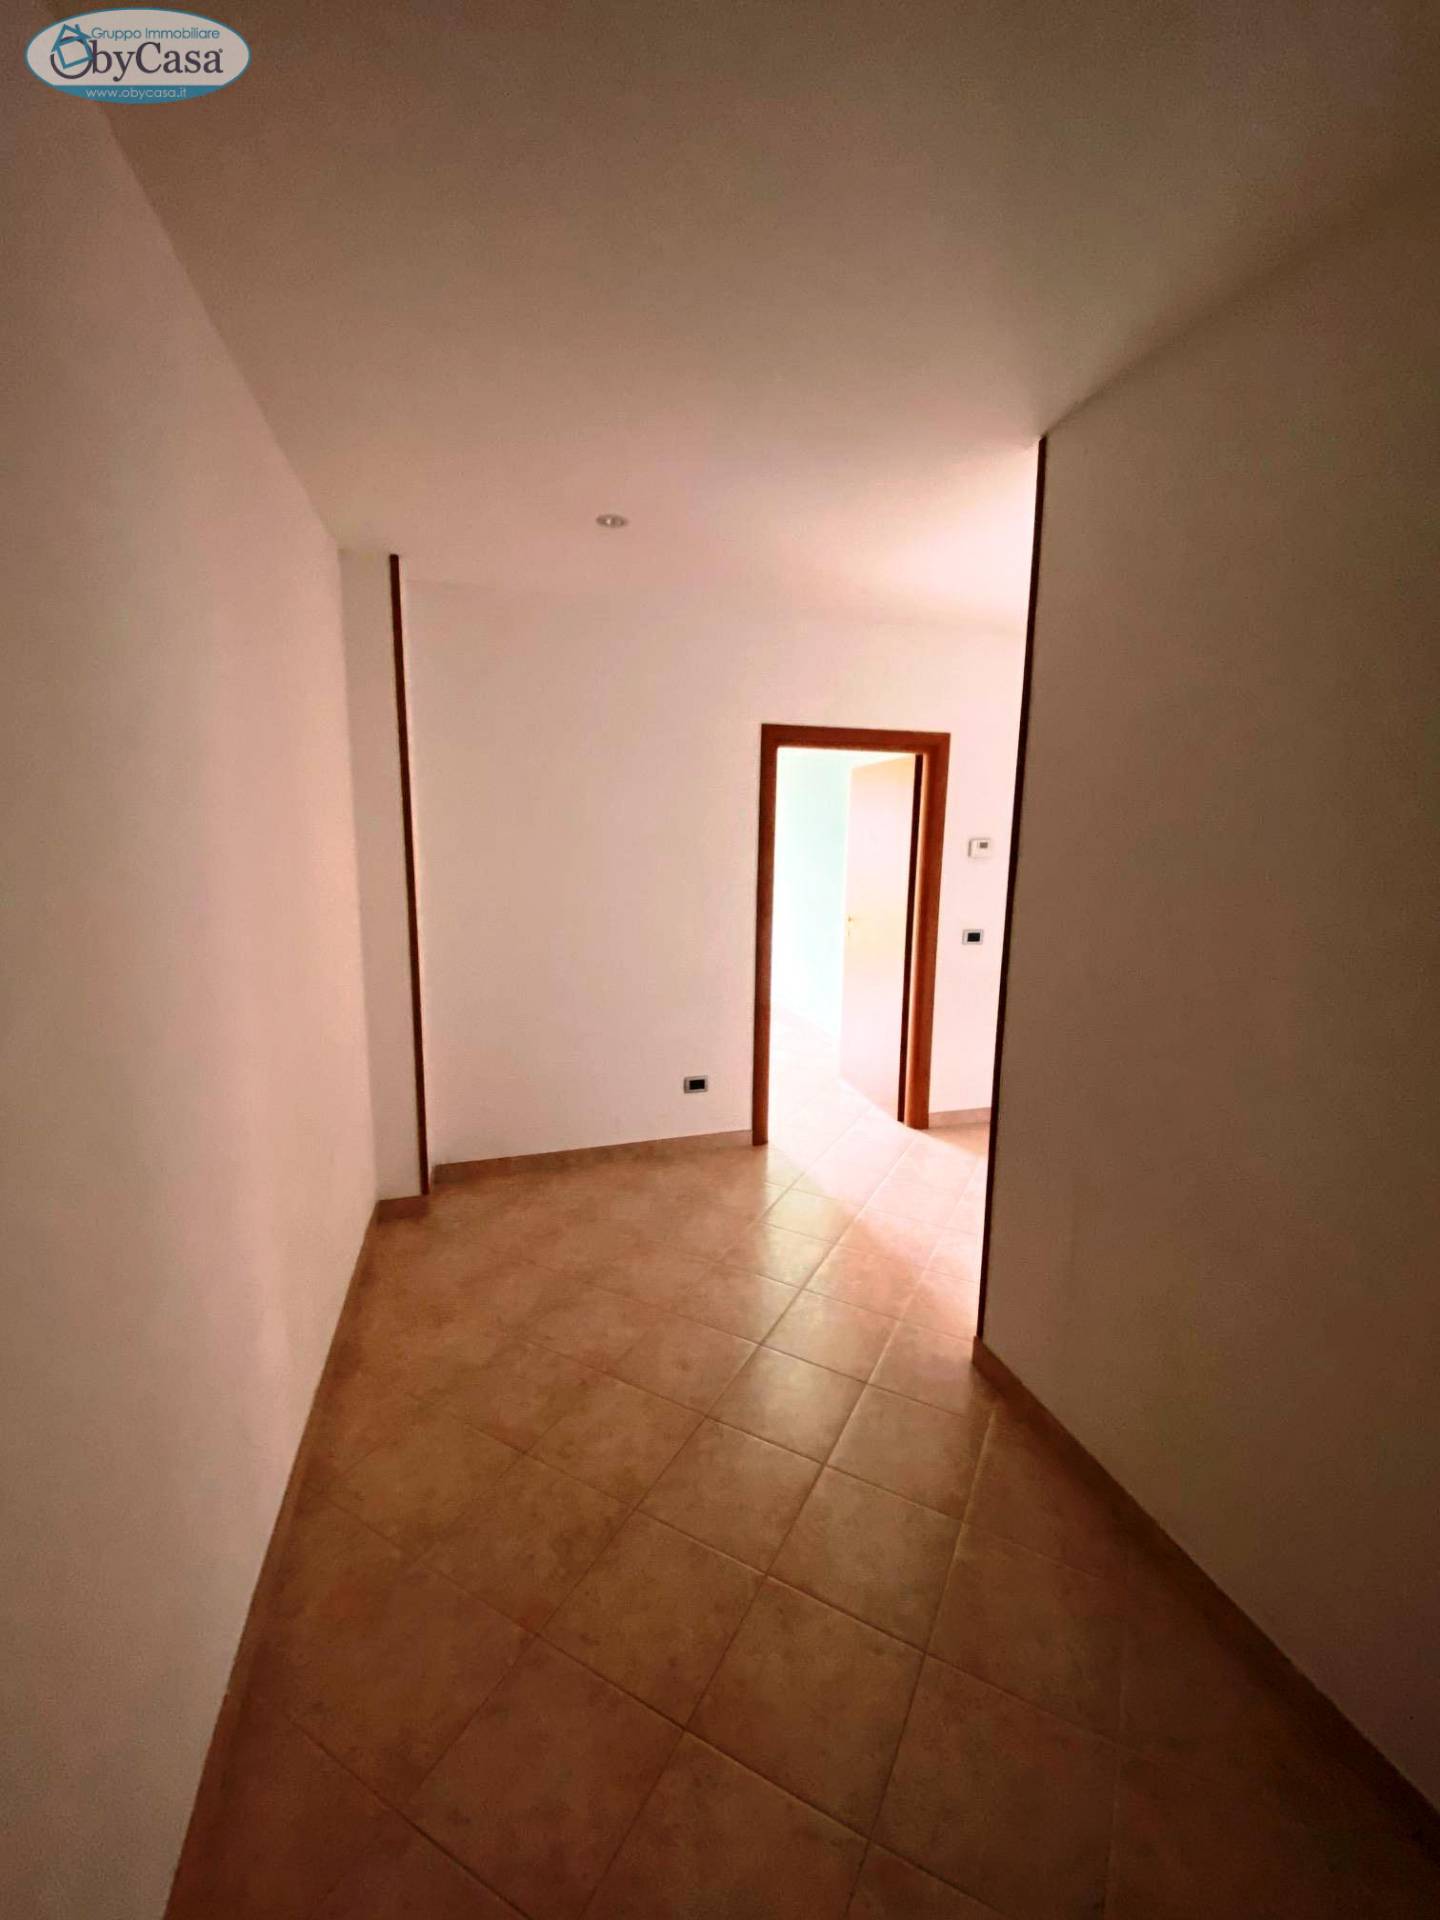 Appartamento in vendita a Bracciano, 3 locali, zona Zona: Centro, prezzo € 190.000 | CambioCasa.it